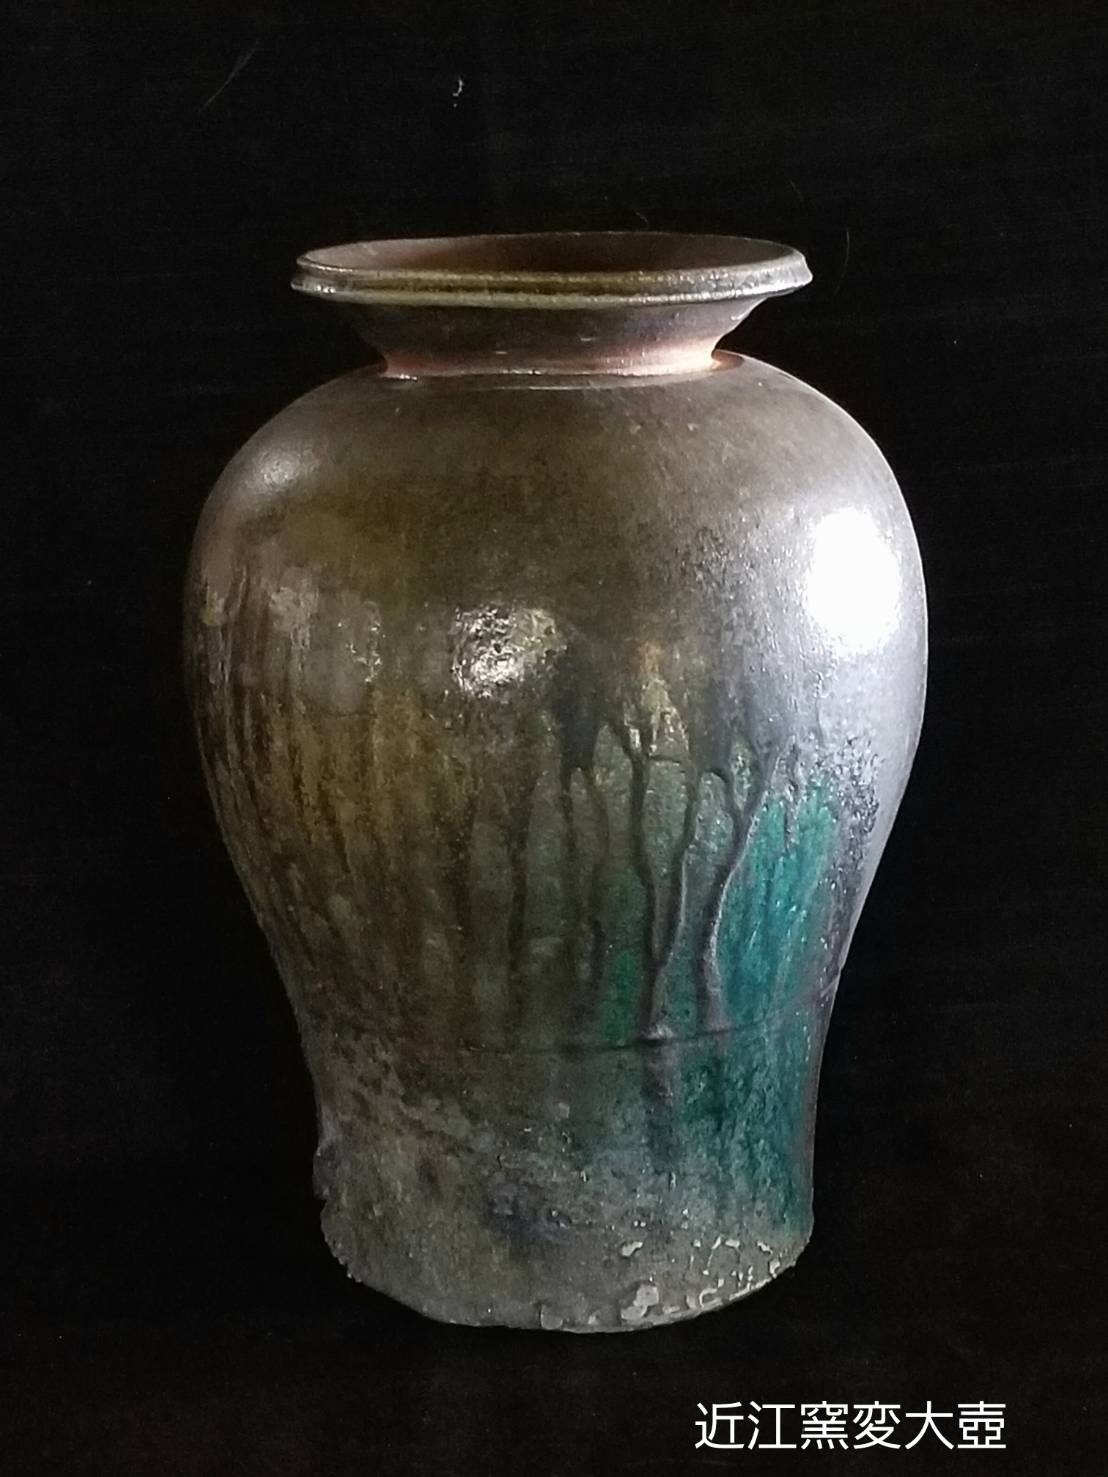 穴窯焼成 花瓶大 陶器 - 花瓶